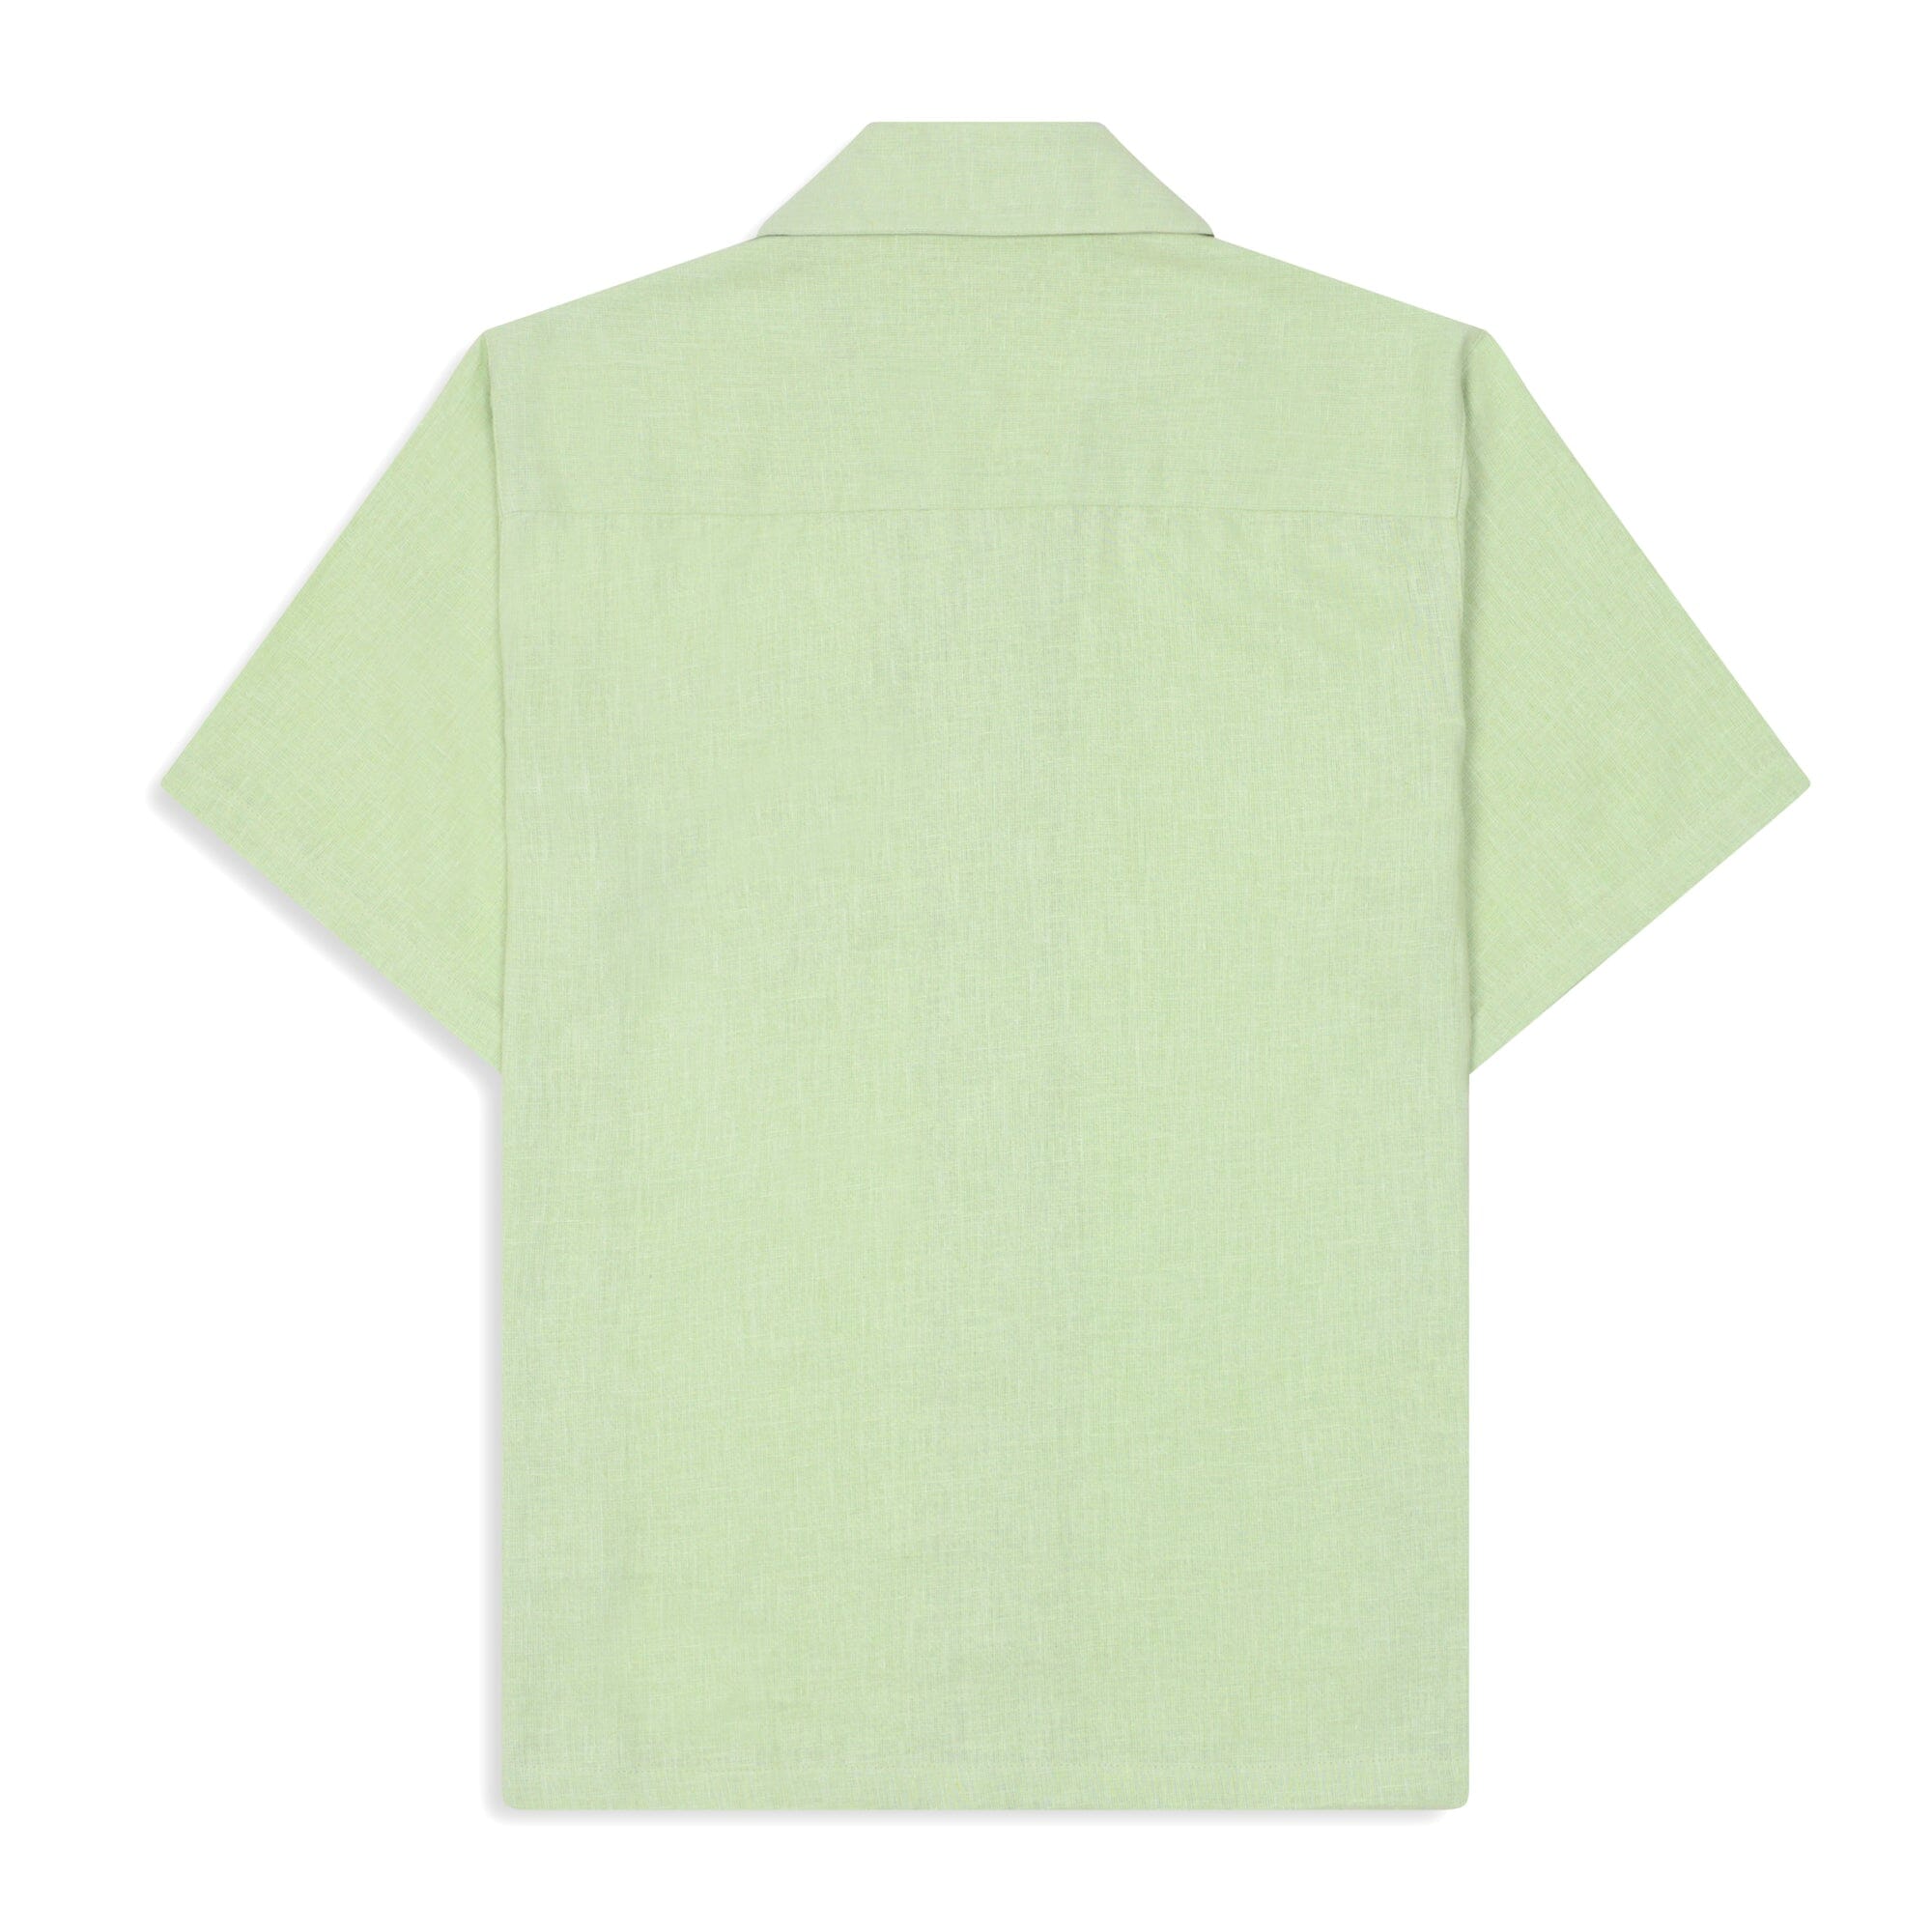 Saint Luke Bequia Linen Shirt in Laurel Green